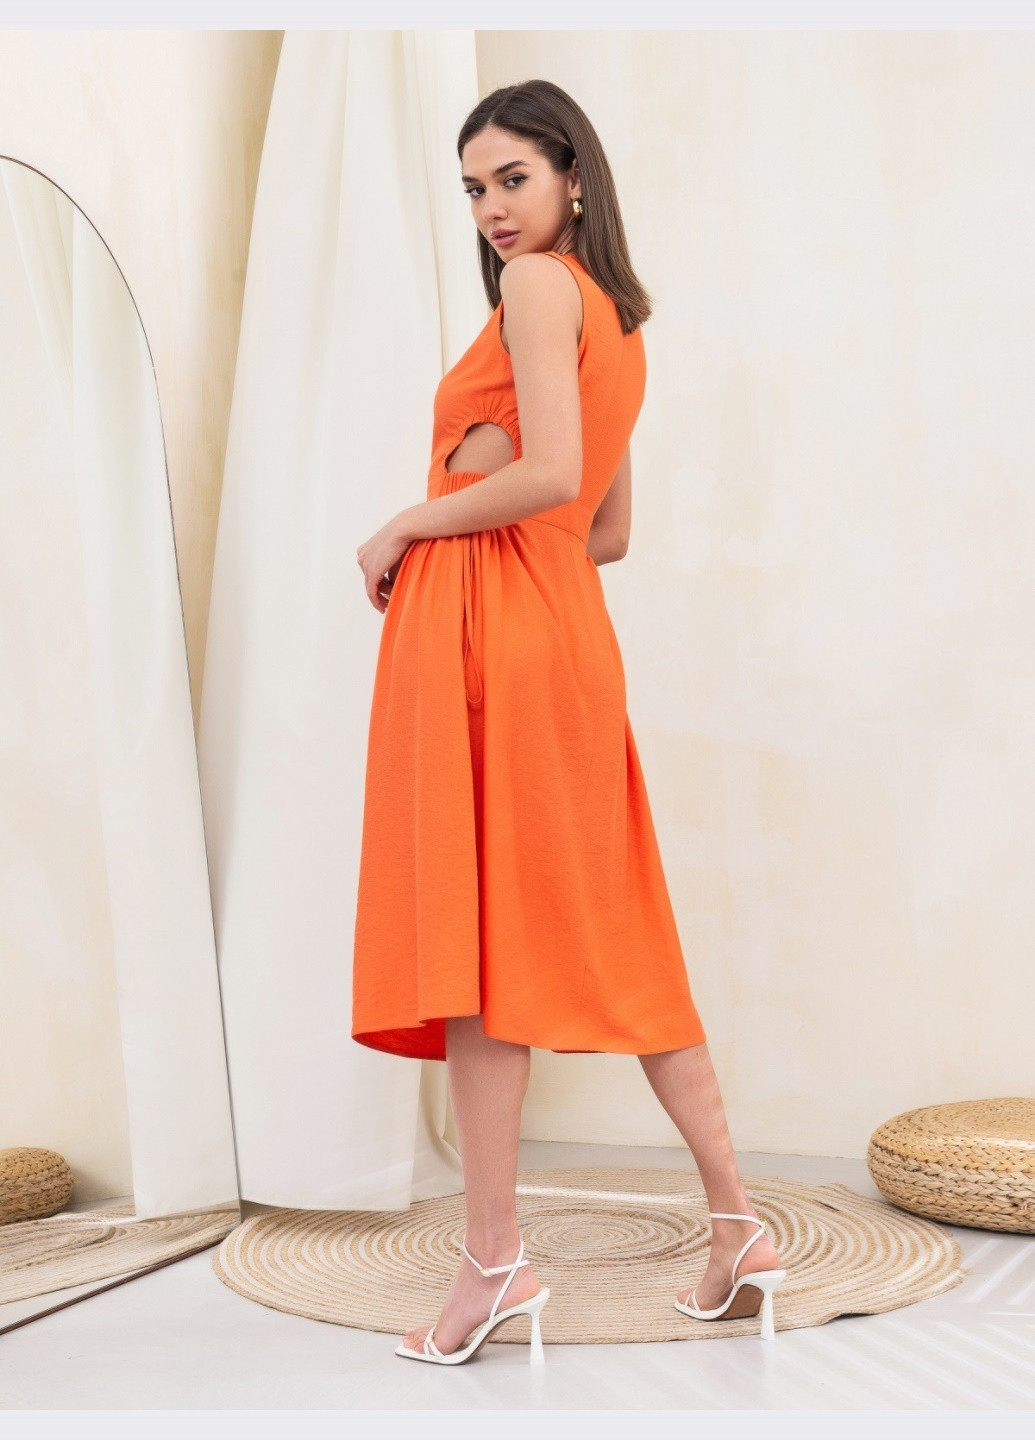 Оранжевое оранжевое платье до колена с оригинальными вырезами сбоку Dressa